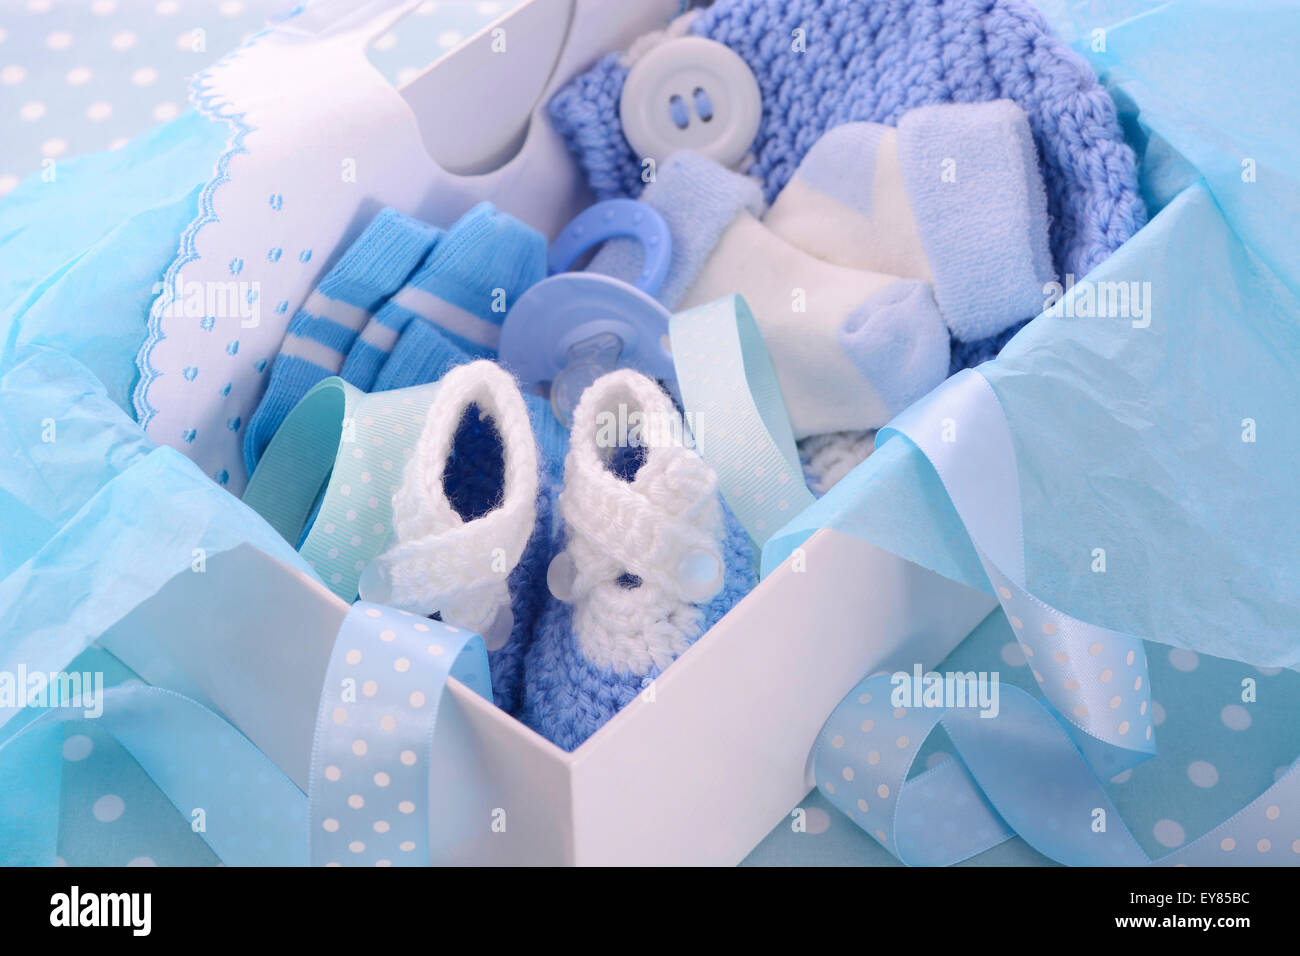 Su niño azul tema baby shower caja de regalo con ropa de bebé, bib, capot,  botines, chupete y calcetines Fotografía de stock - Alamy